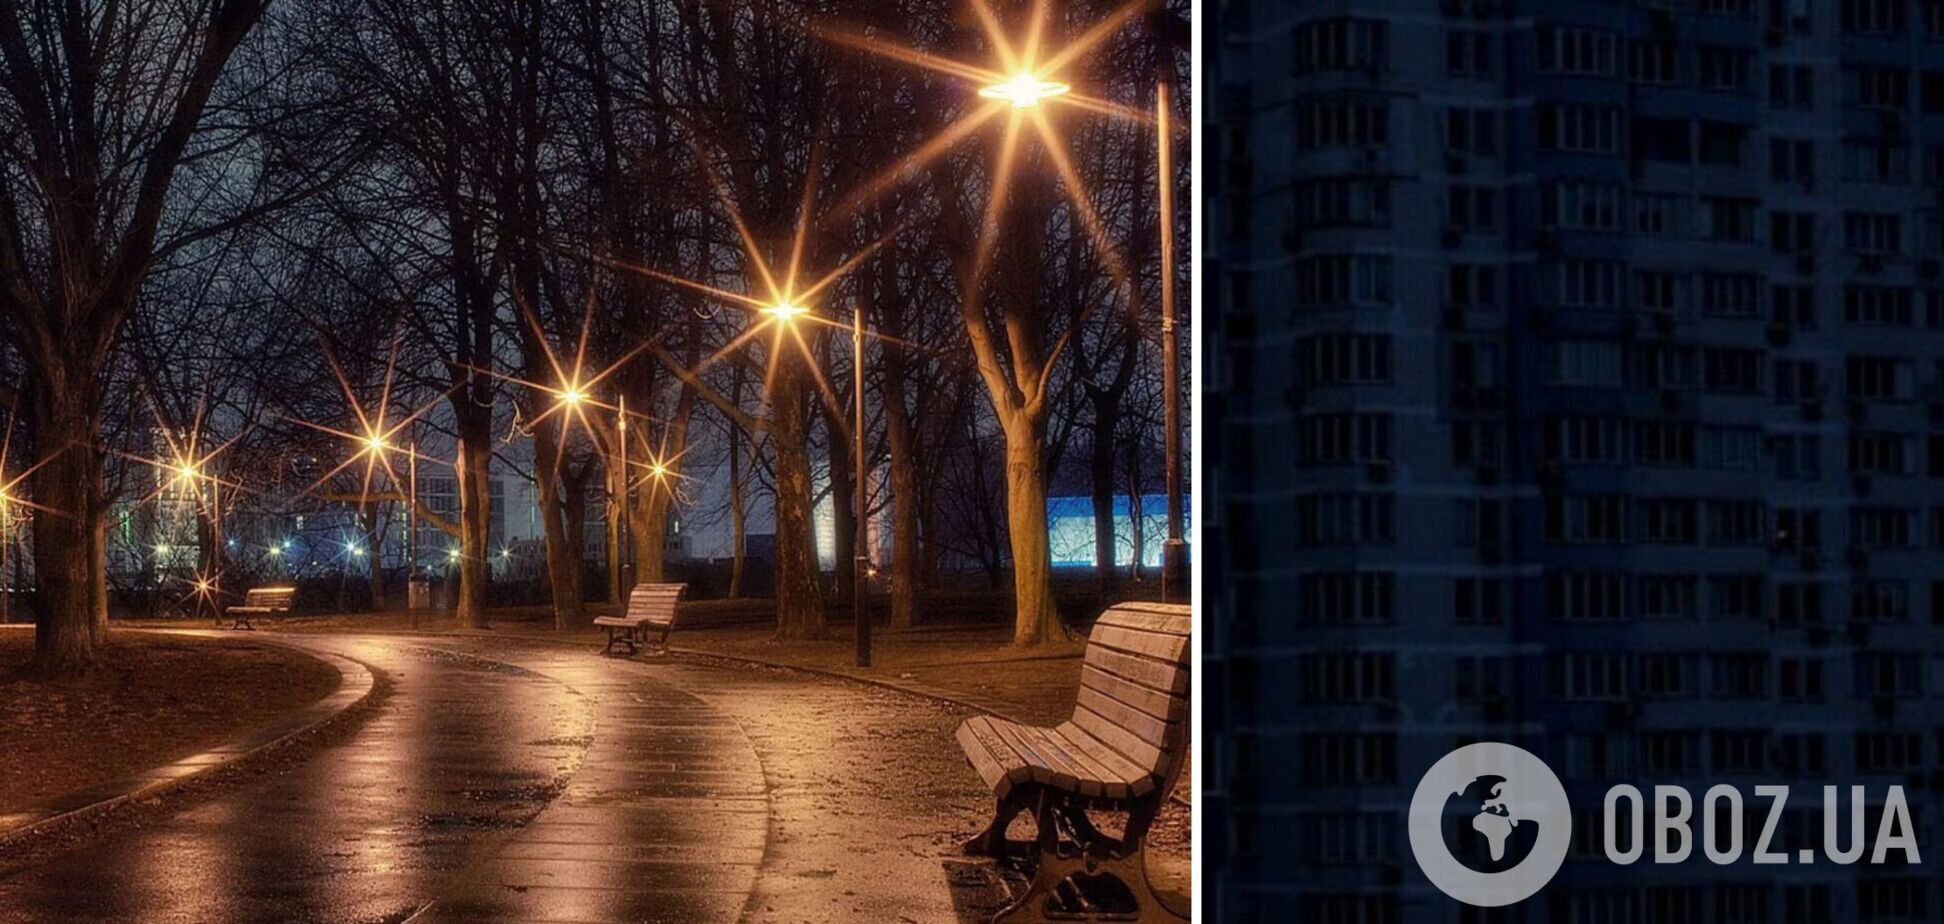 Эксперт рассказал, почему на улицах могут светить фонари во время отключений